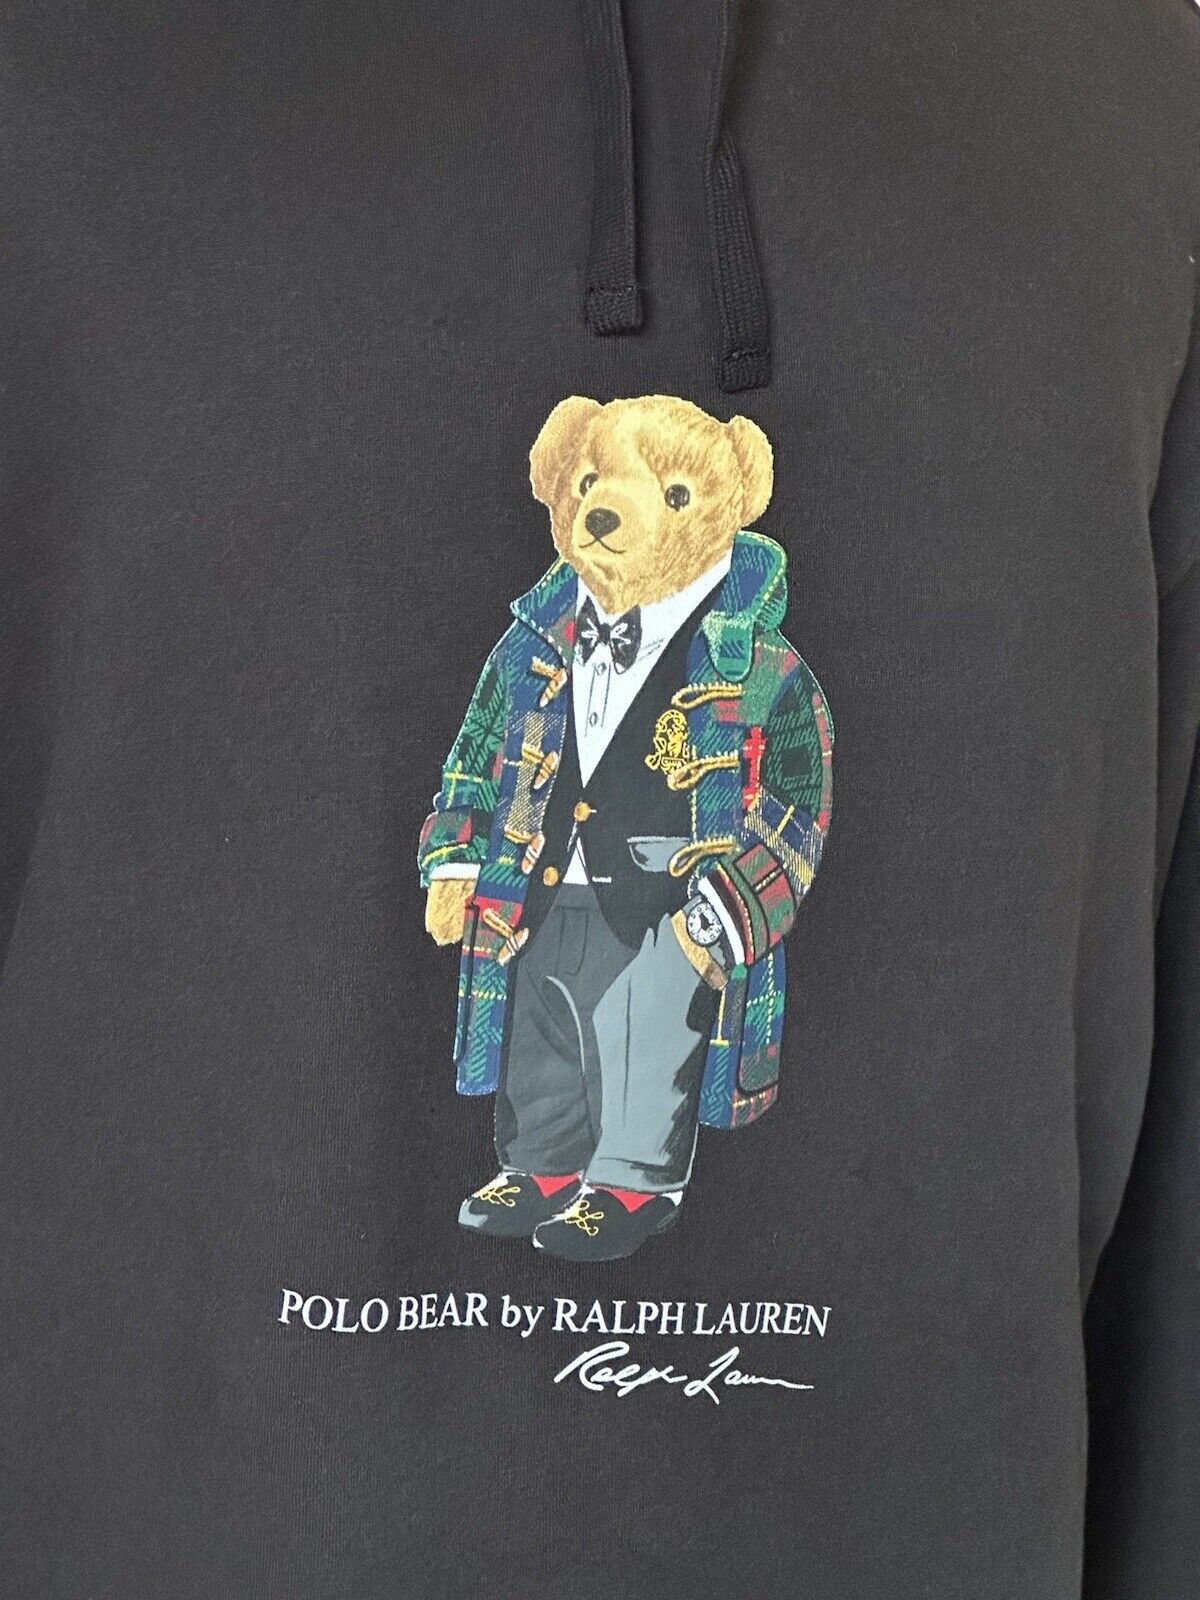 Толстовка с медведем и длинными рукавами Polo Ralph Lauren за 188 долларов NWT, черная XLT/TGL 